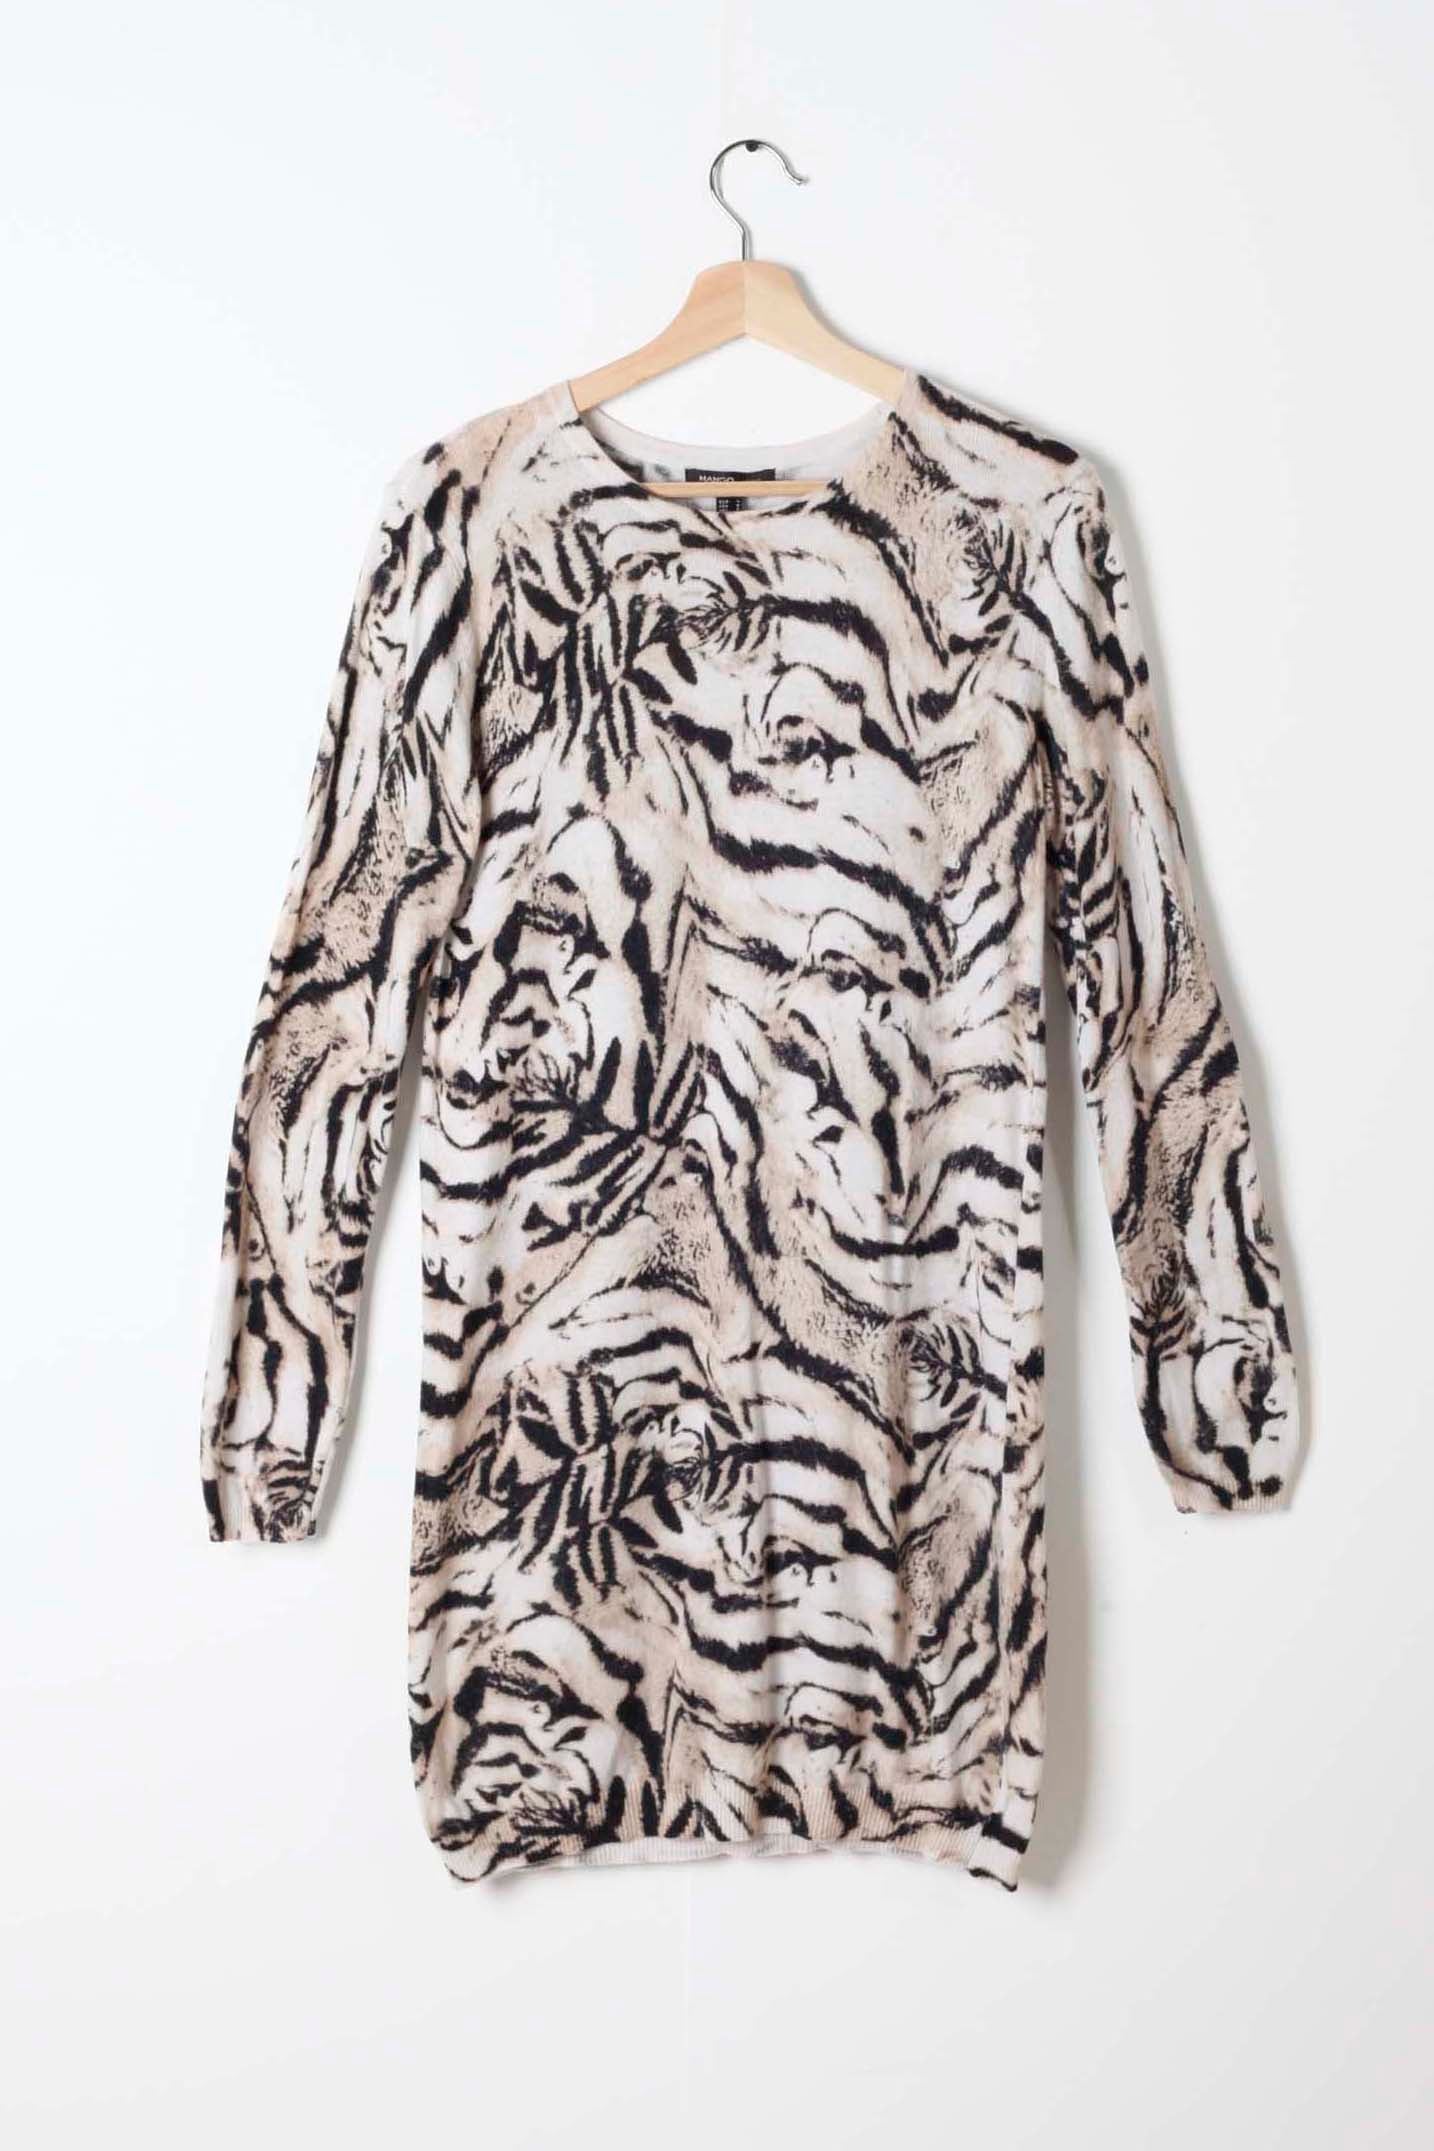 Tiger Print Sweater Mini Dress (small/medium)